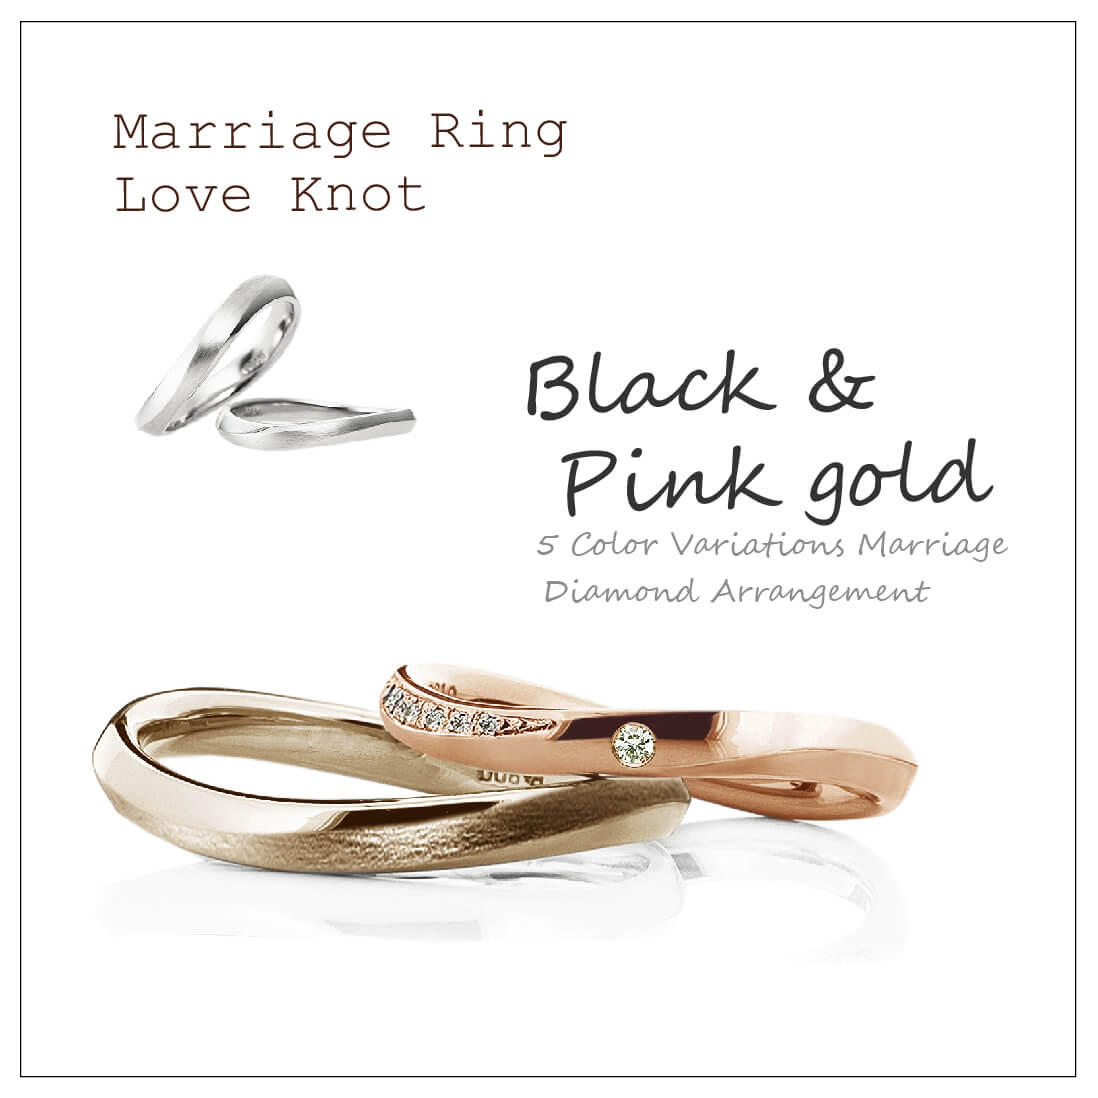 ウエーブのペアの結婚指輪です。メンズはブラックゴールドで真ん中をつや消しのアレンジにしています。レディースはピンクゴールドで、真ん中に1ピースとサイド面にメレダイヤを並べています。